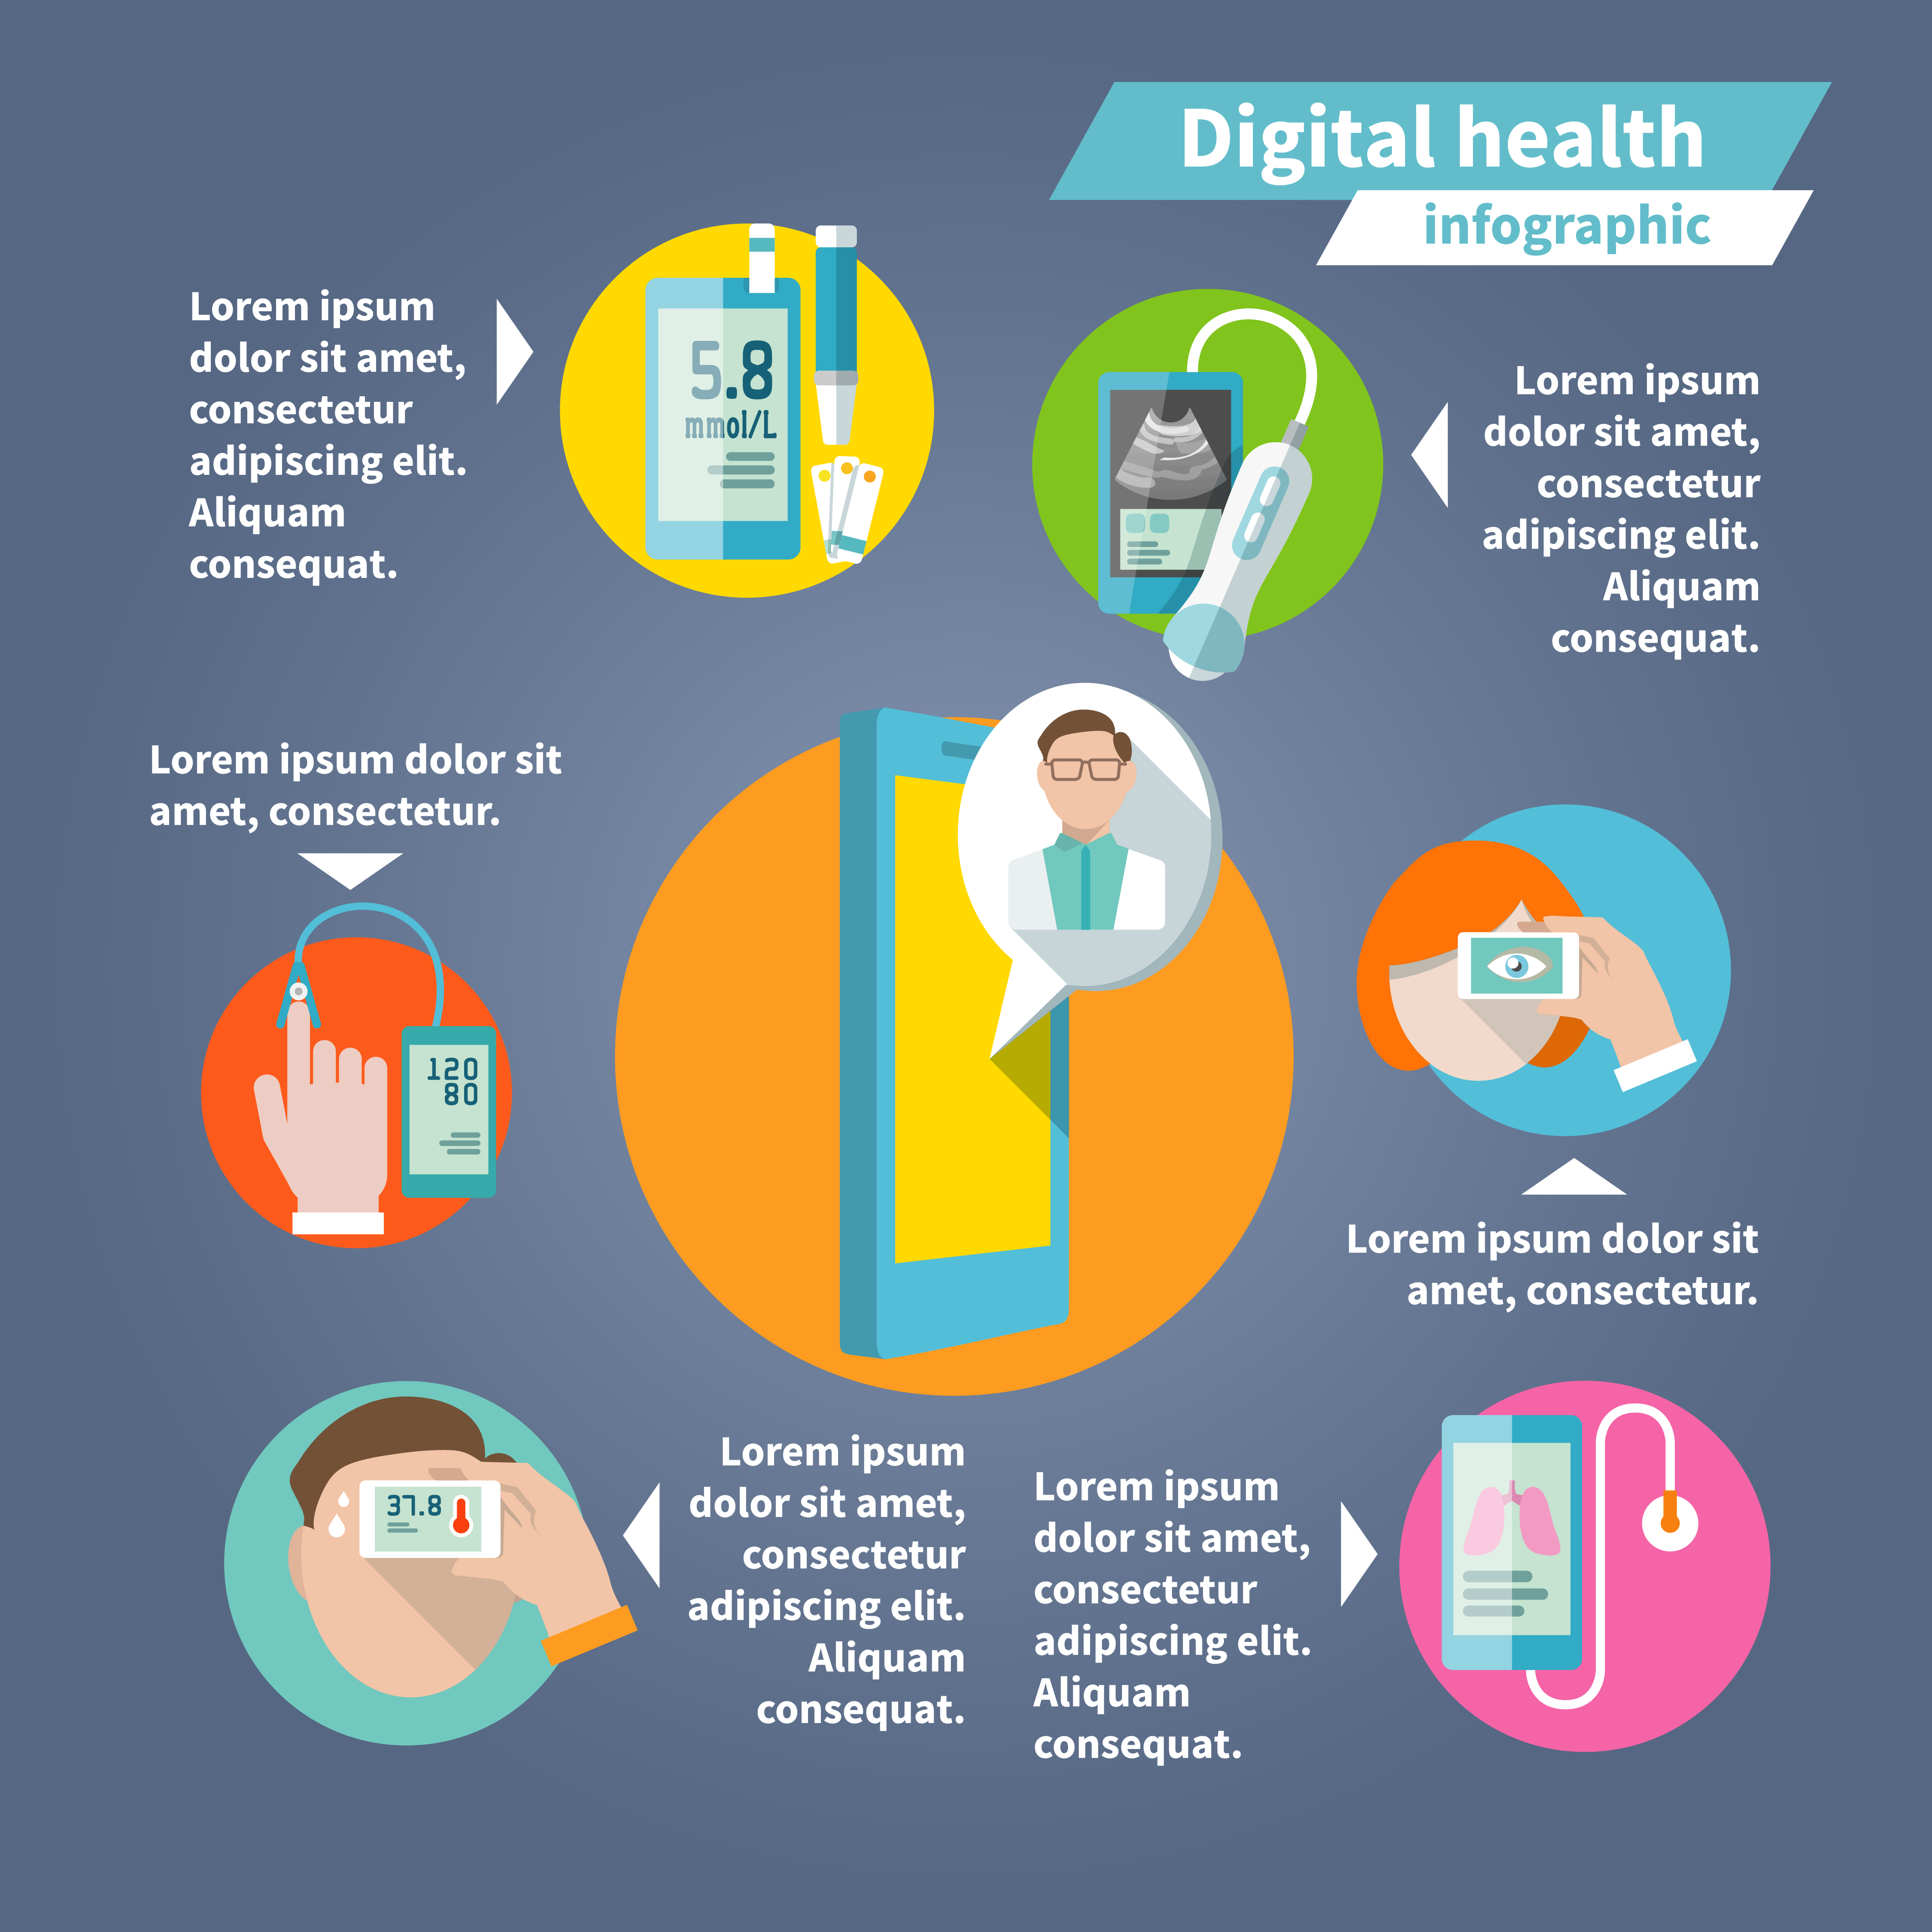 Digital health infographics 438129 Download Free Vectors, Clipart